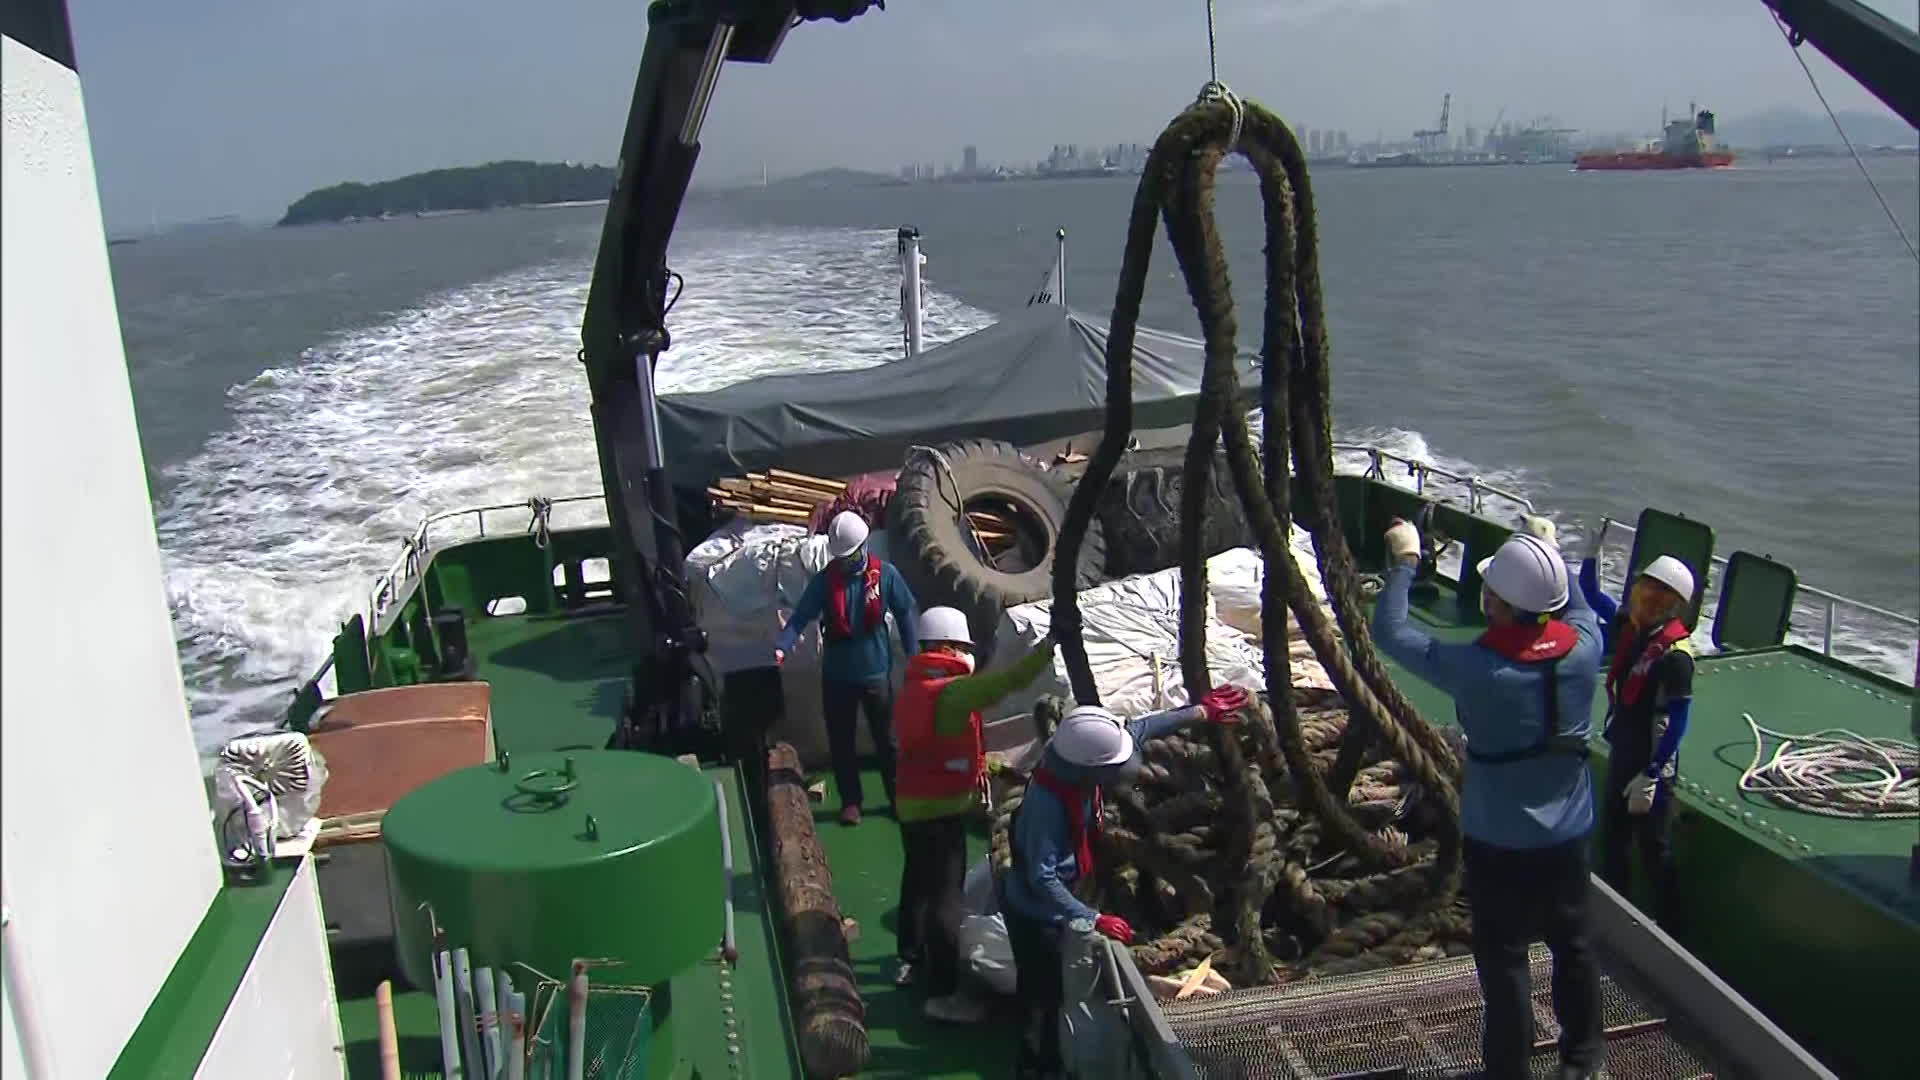 ‘씨클린호’ 부유 해양쓰레기 수거 작업. 수거된 200m 길이의 대형 밧줄과 폐타이어 등이 보인다.